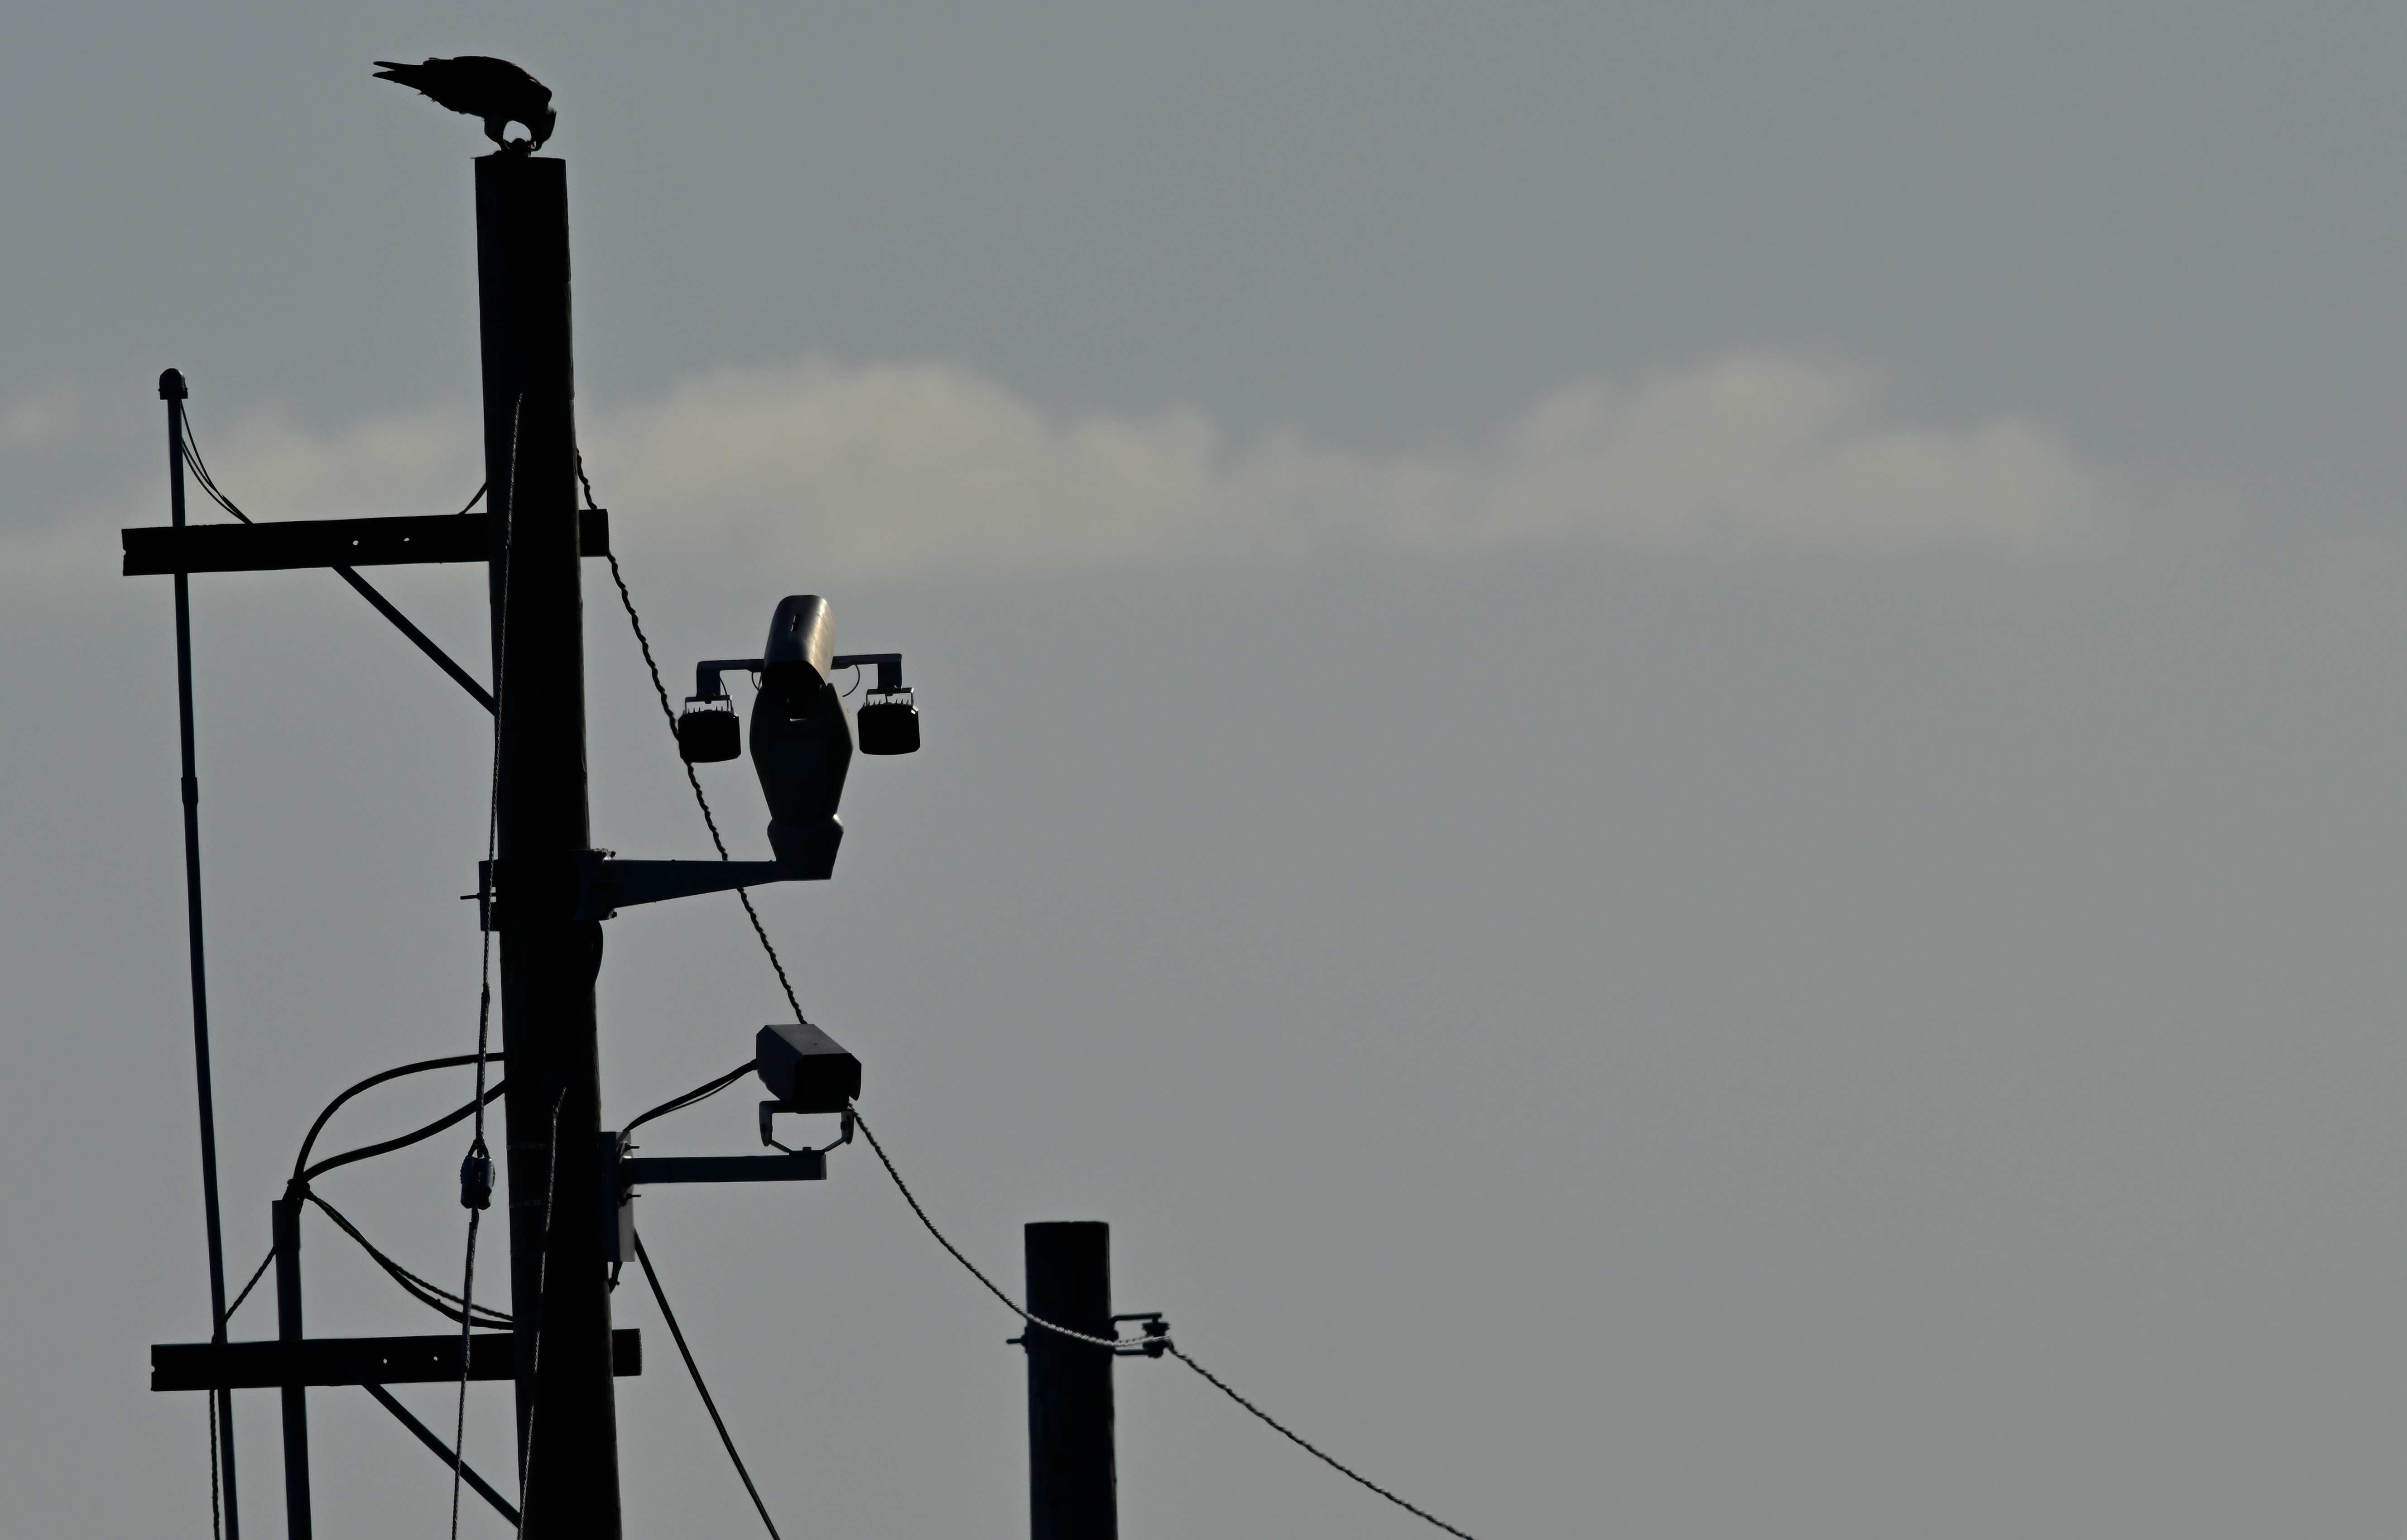 Ospreys feeds on a fish atop a telephone pole.